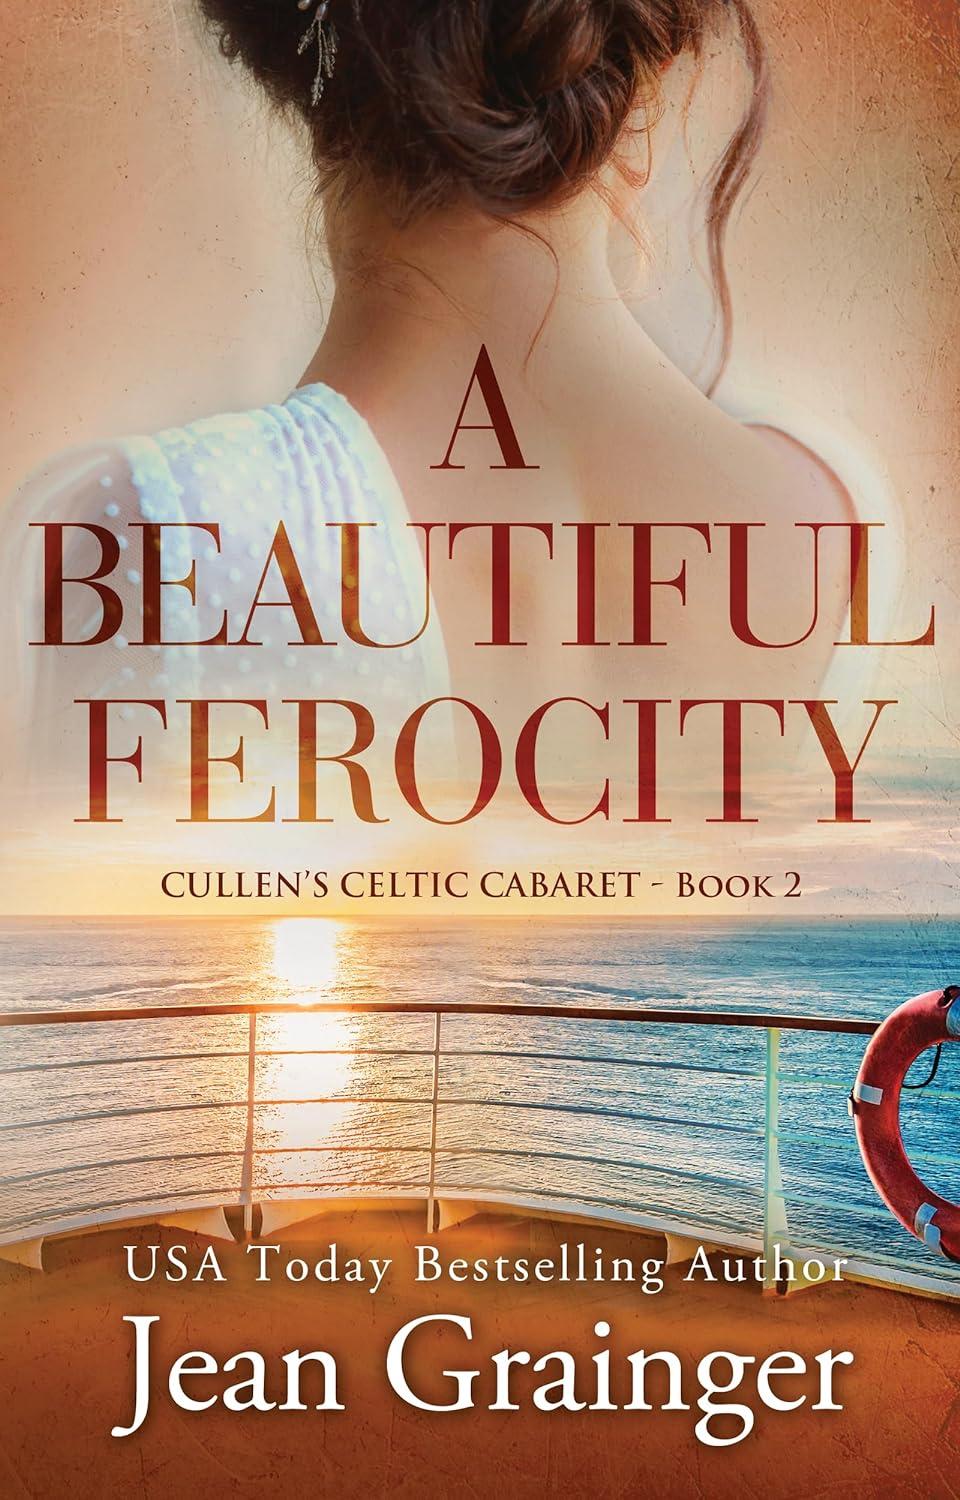 A Beautiful Ferocity: Cullen's Celtic Cabaret - Book 2